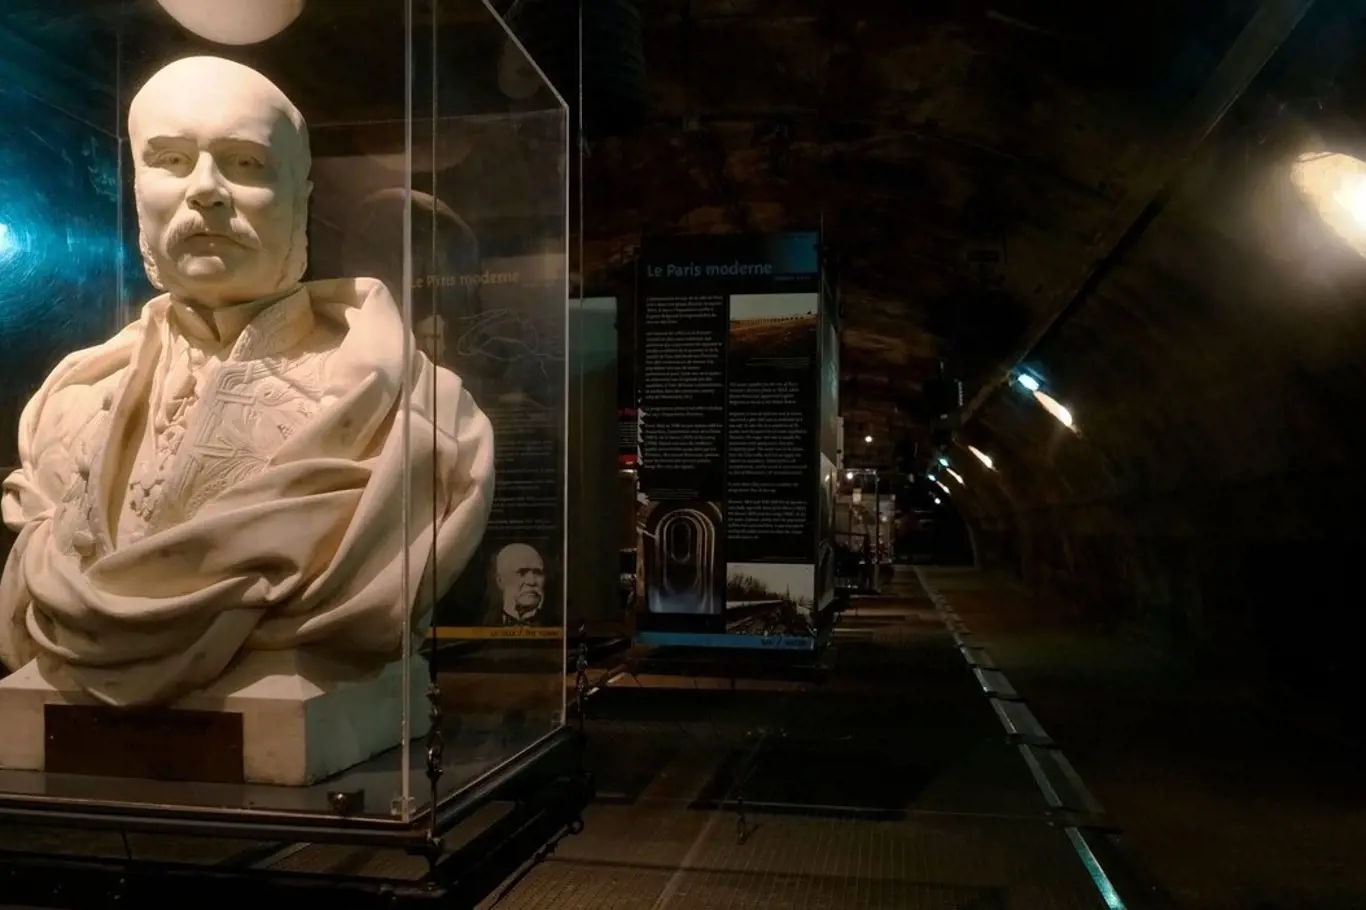 Muzeum kanalizace Paříž: Schovávali se tu zlodějíčci, odboráři i povstalci